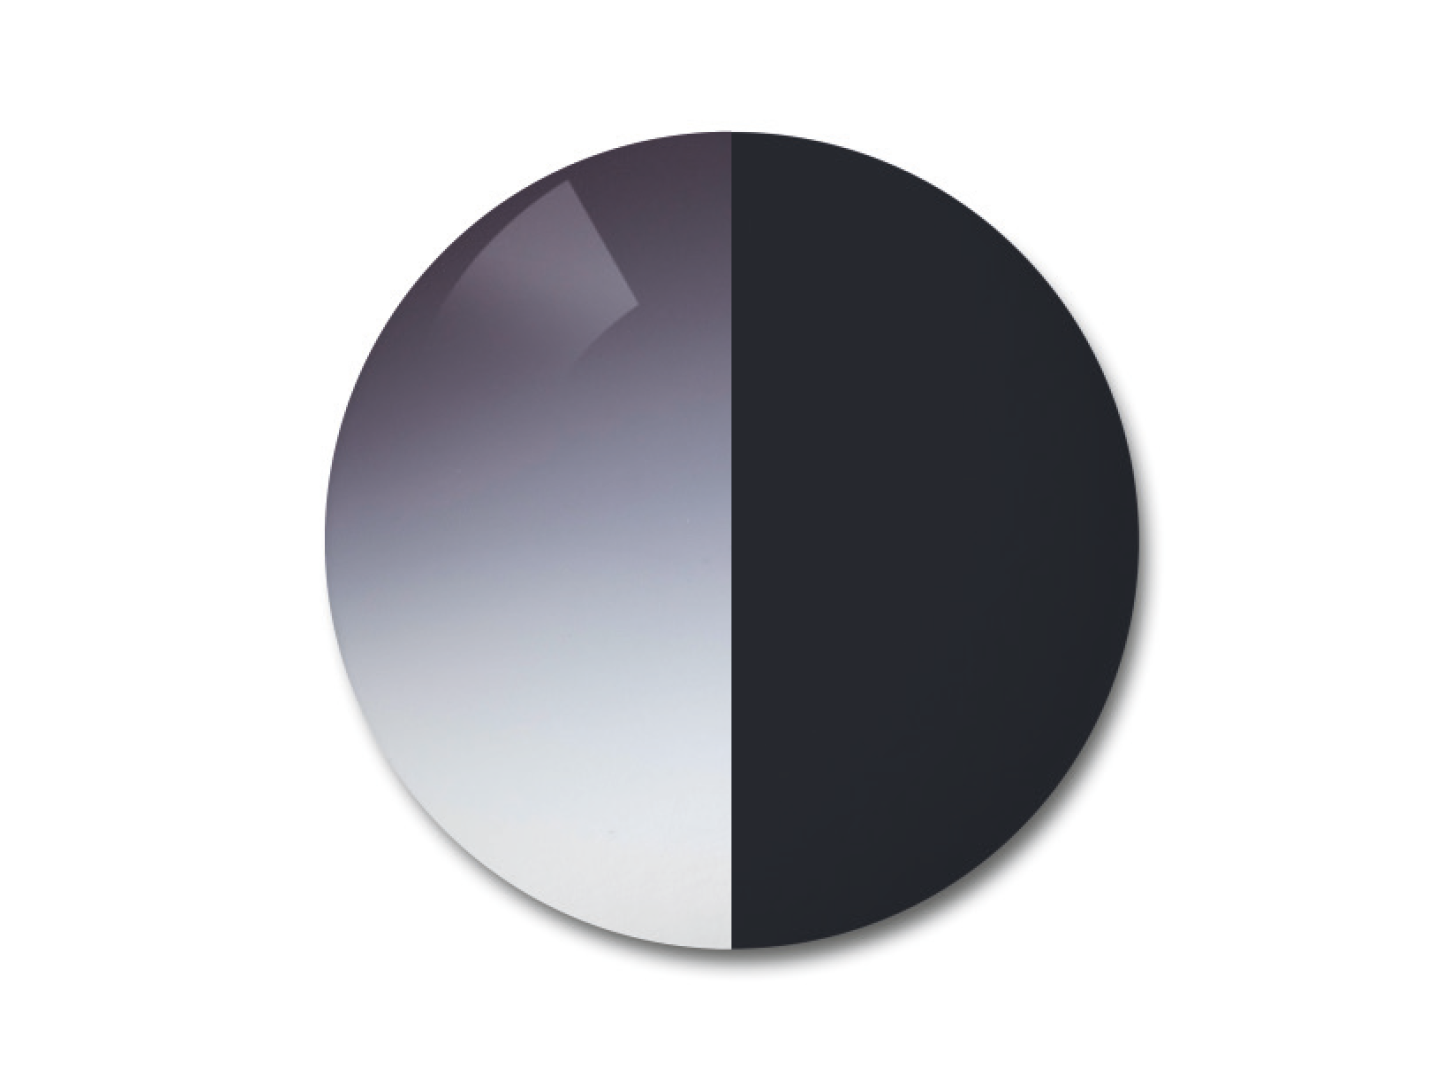 자이스 어댑티브선 변색 렌즈 중 그라데이션 그레이 컬러를 보여주는 이미지 